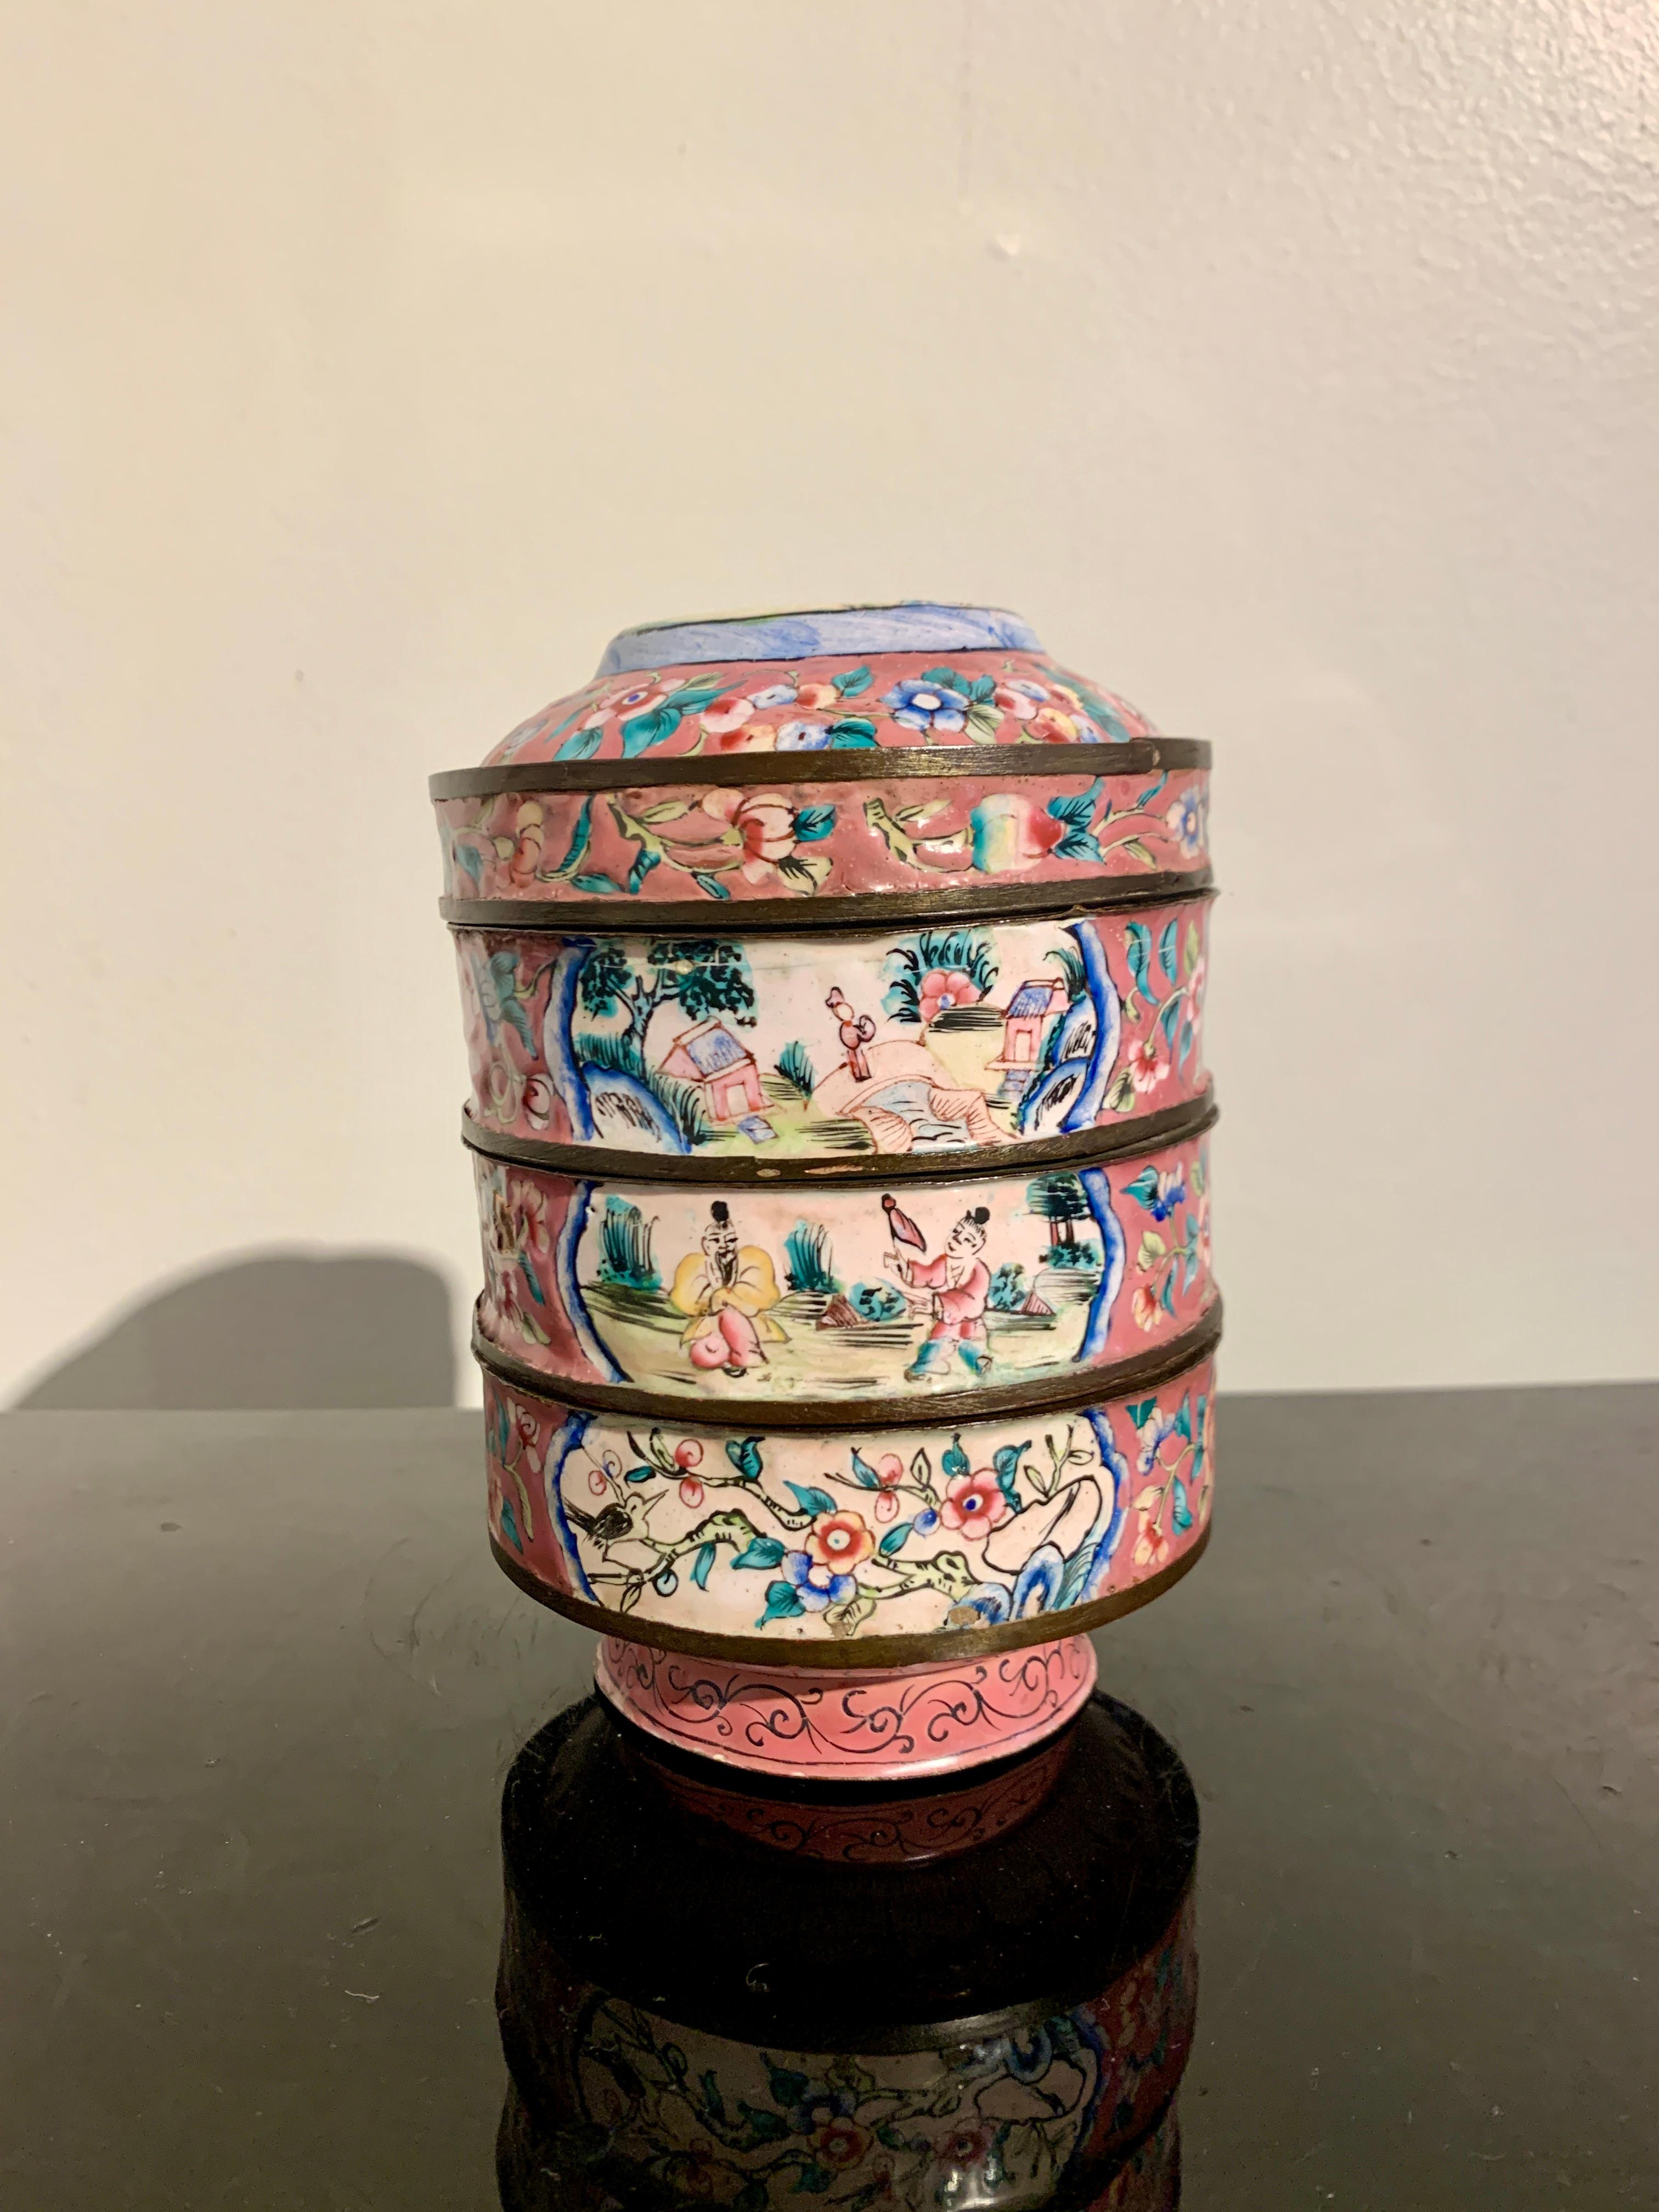 Eine absolut schöne chinesische Export rosa Kanton Emaille runde Stapeldose und Deckel, späten Qing-Dynastie, um 1900, China.

Die runde Stapelbox besteht aus einem schalenförmigen Boden, zwei runden, stapelbaren Schalen und einem Deckel, der